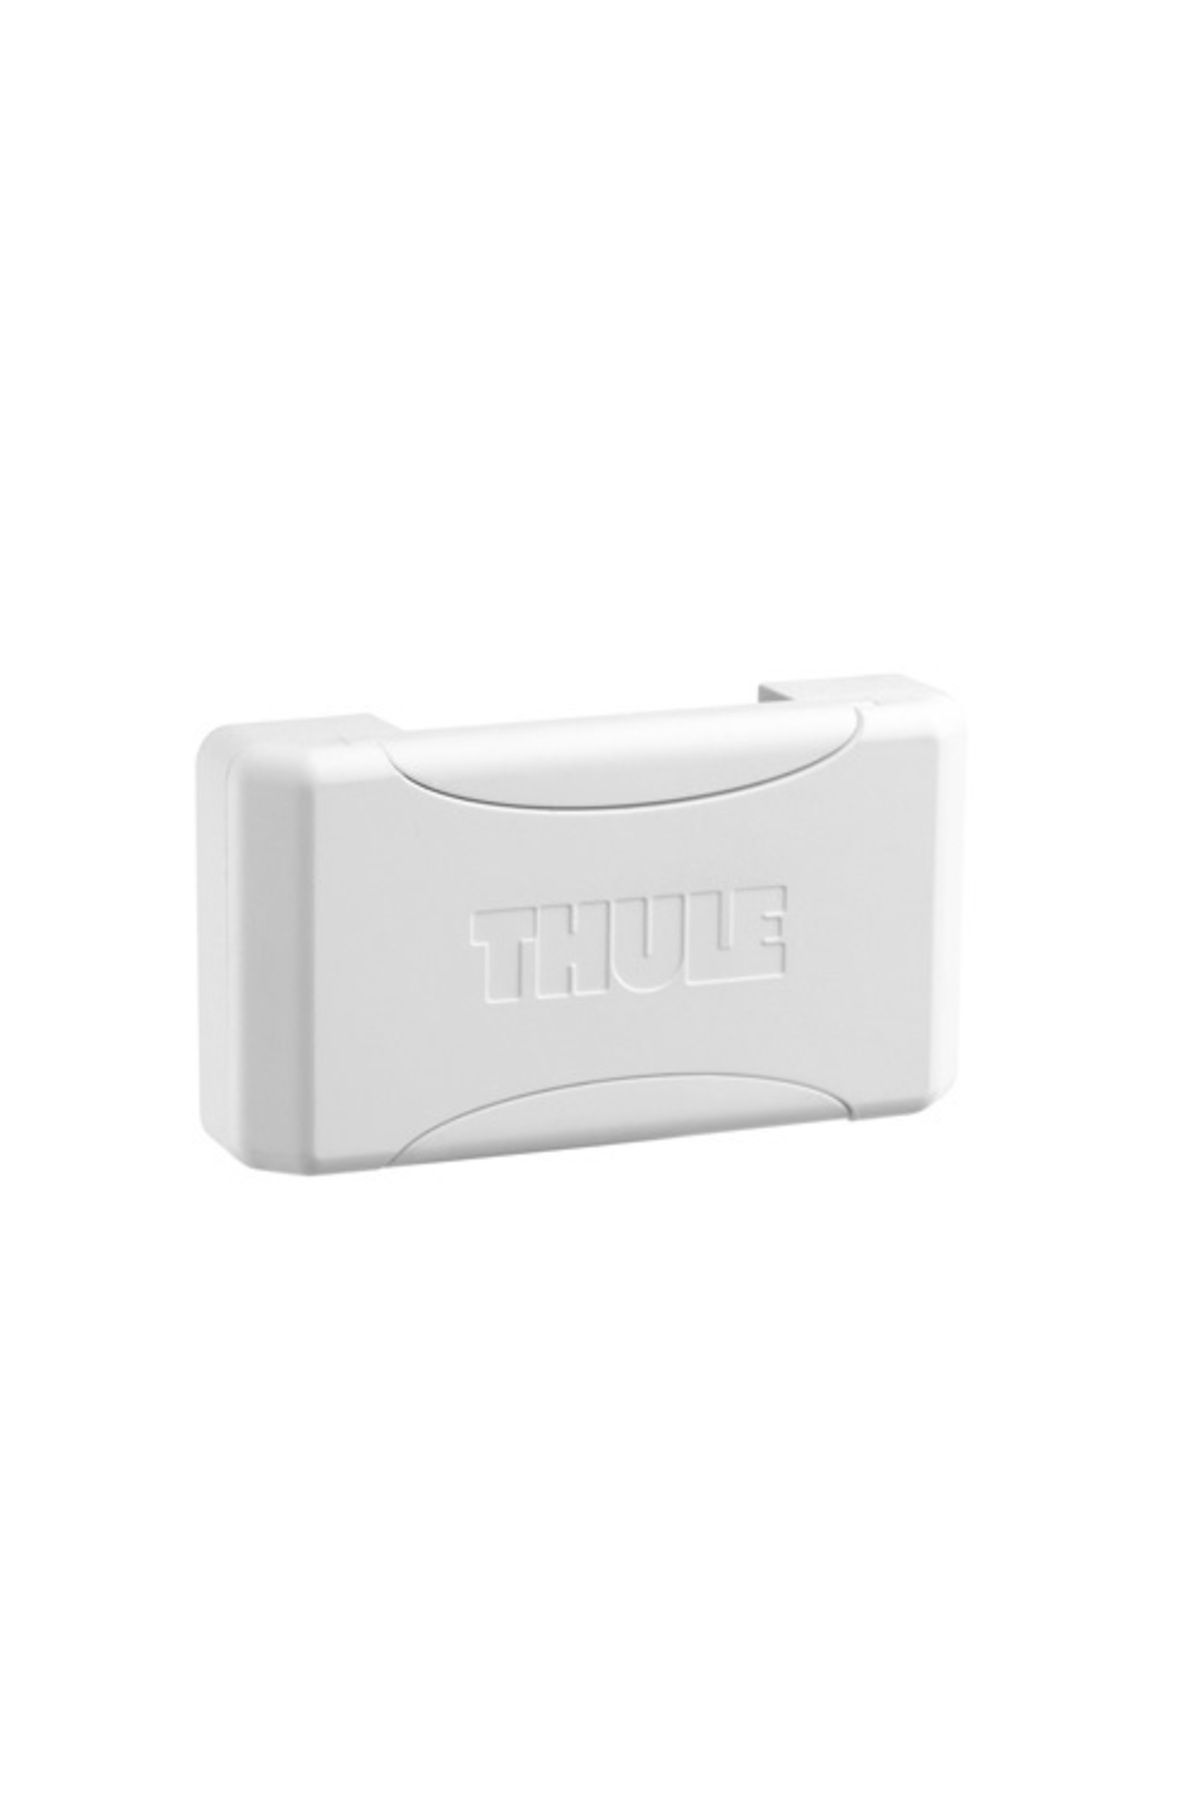 Thule Pod 2.0 Duvar Askısı Beyaz (2 ADET)